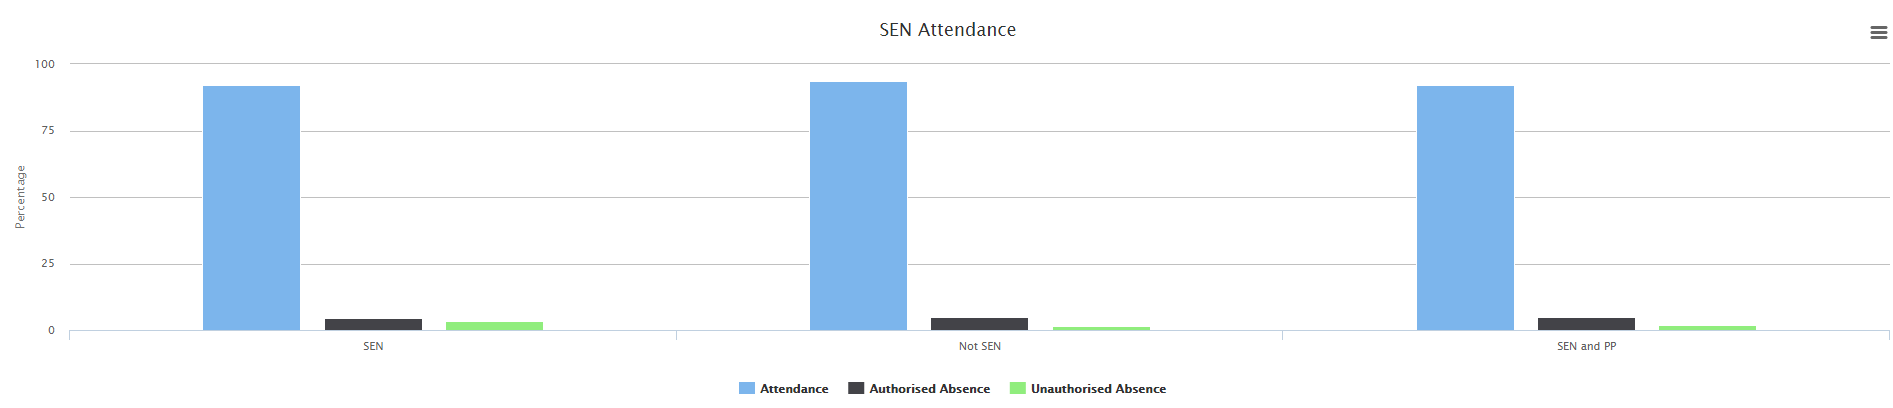 sen_attendance.png